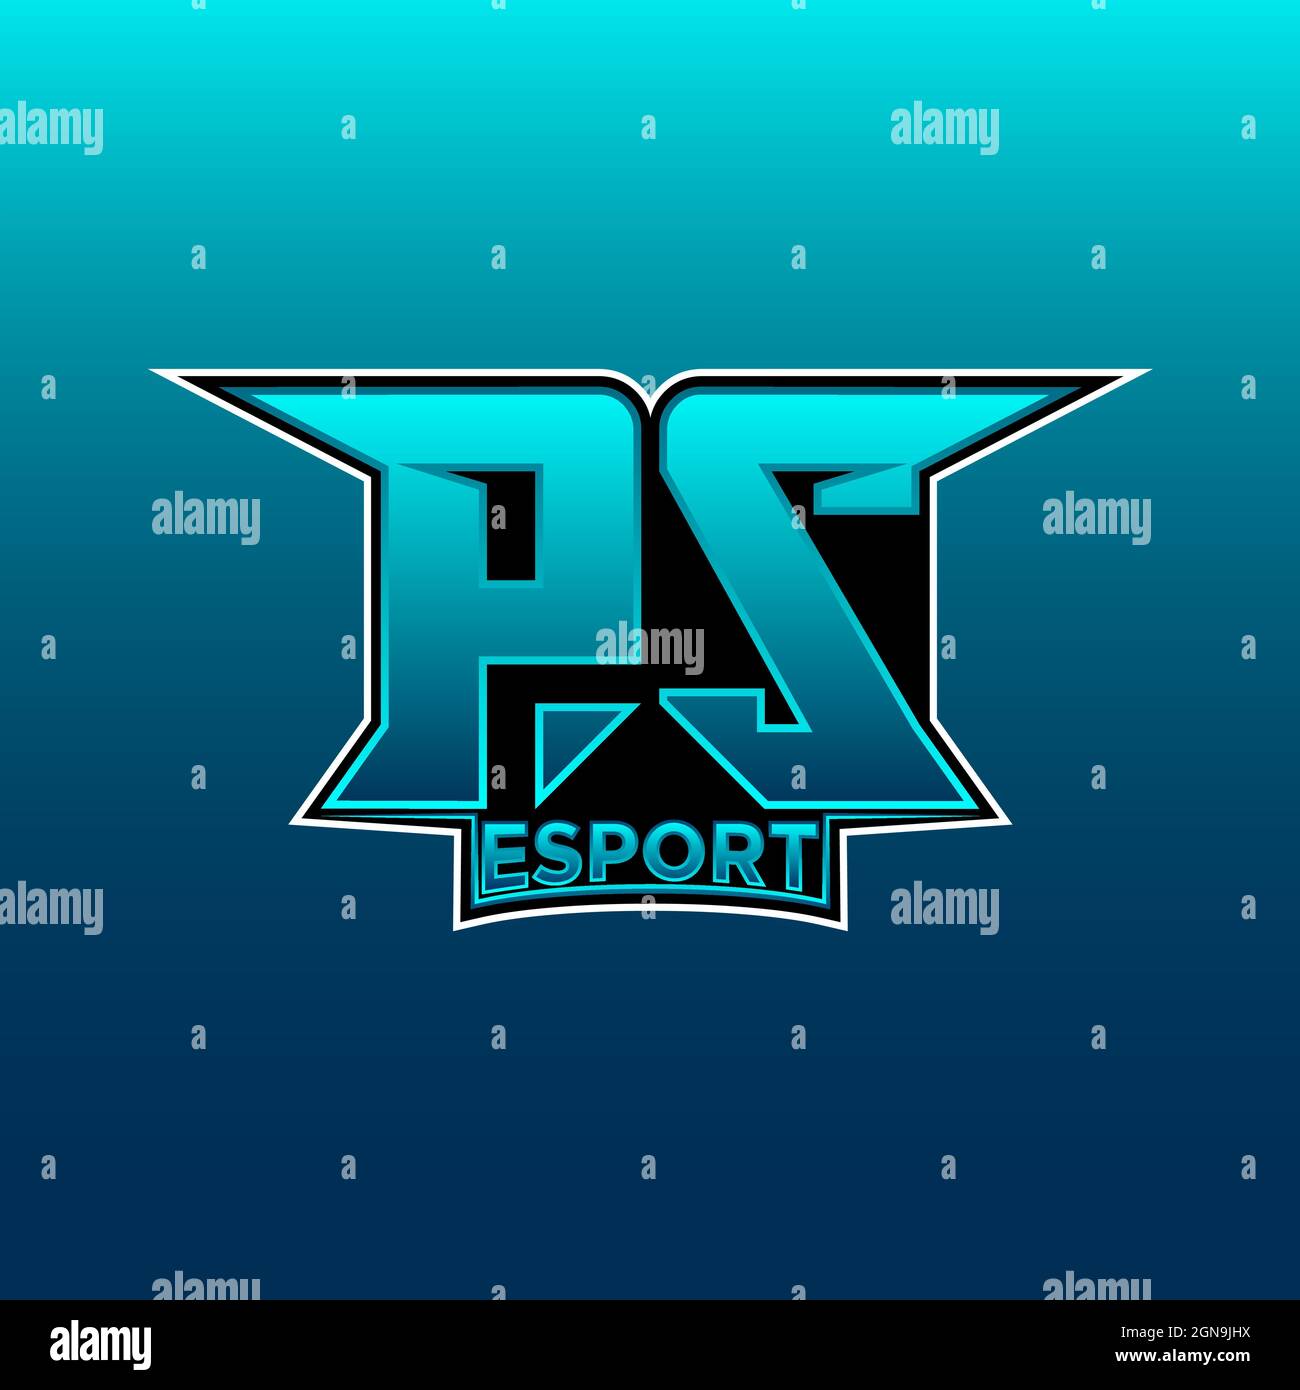 Logo PS eSport initiale de jeu avec modèle vectoriel de couleur bleu clair  Image Vectorielle Stock - Alamy